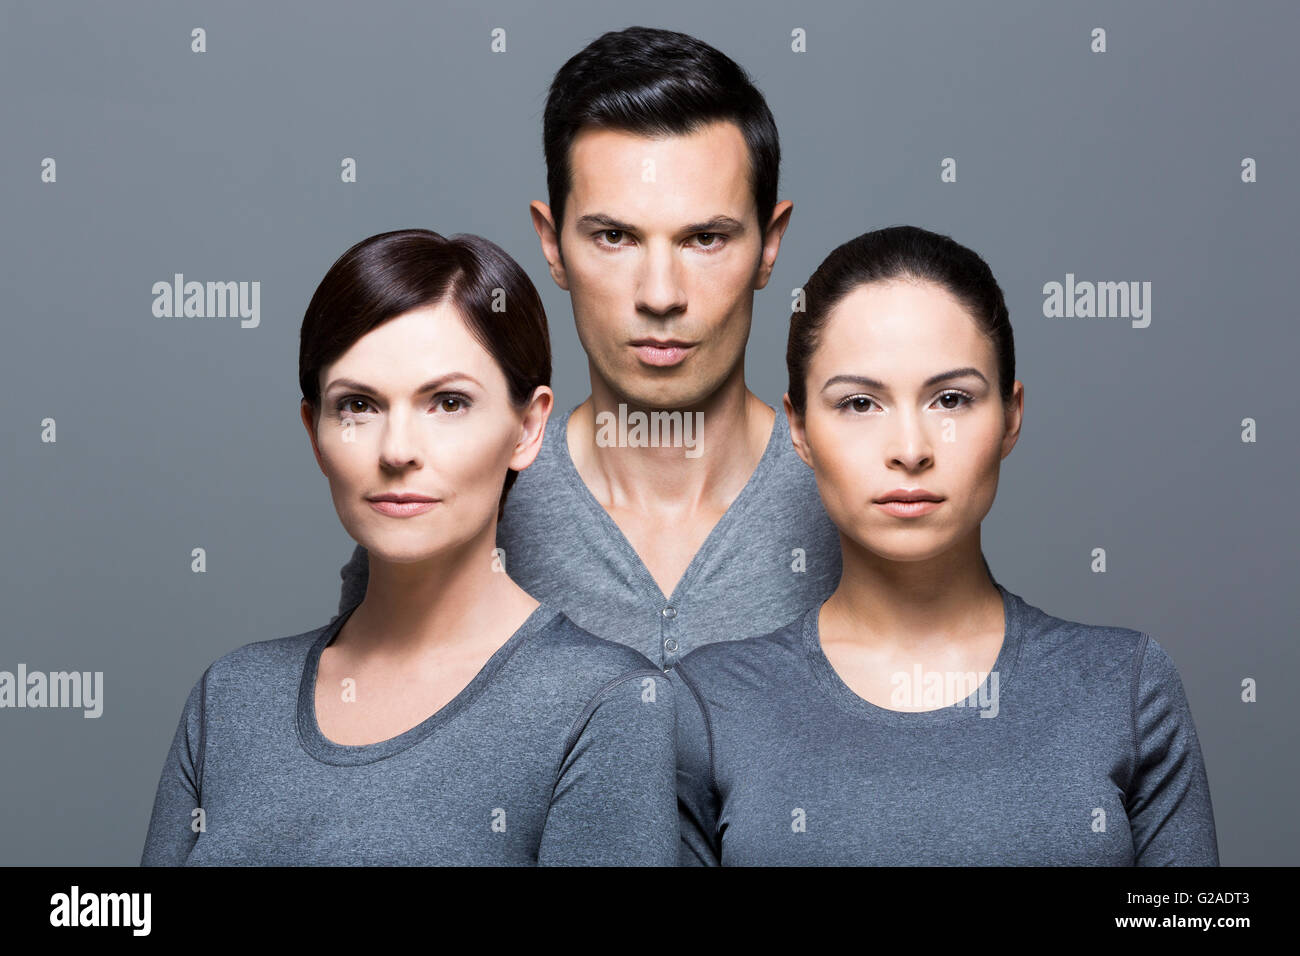 Hombre y dos mujeres que llevaban tops gris Foto de stock